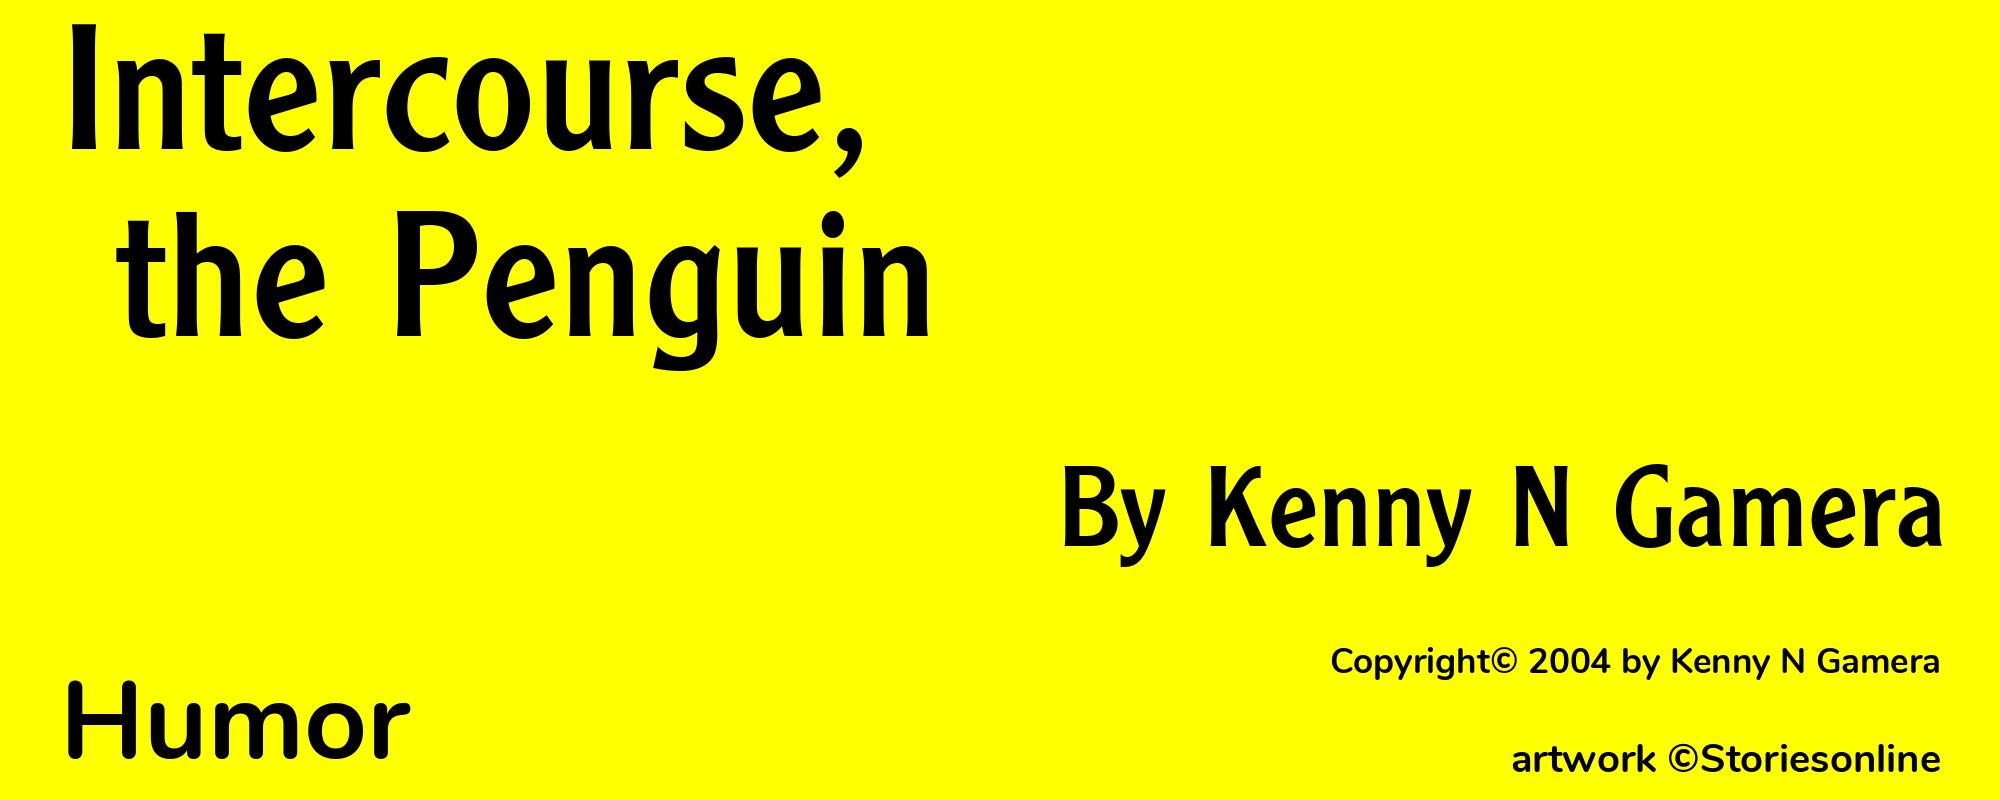 Intercourse, the Penguin - Cover